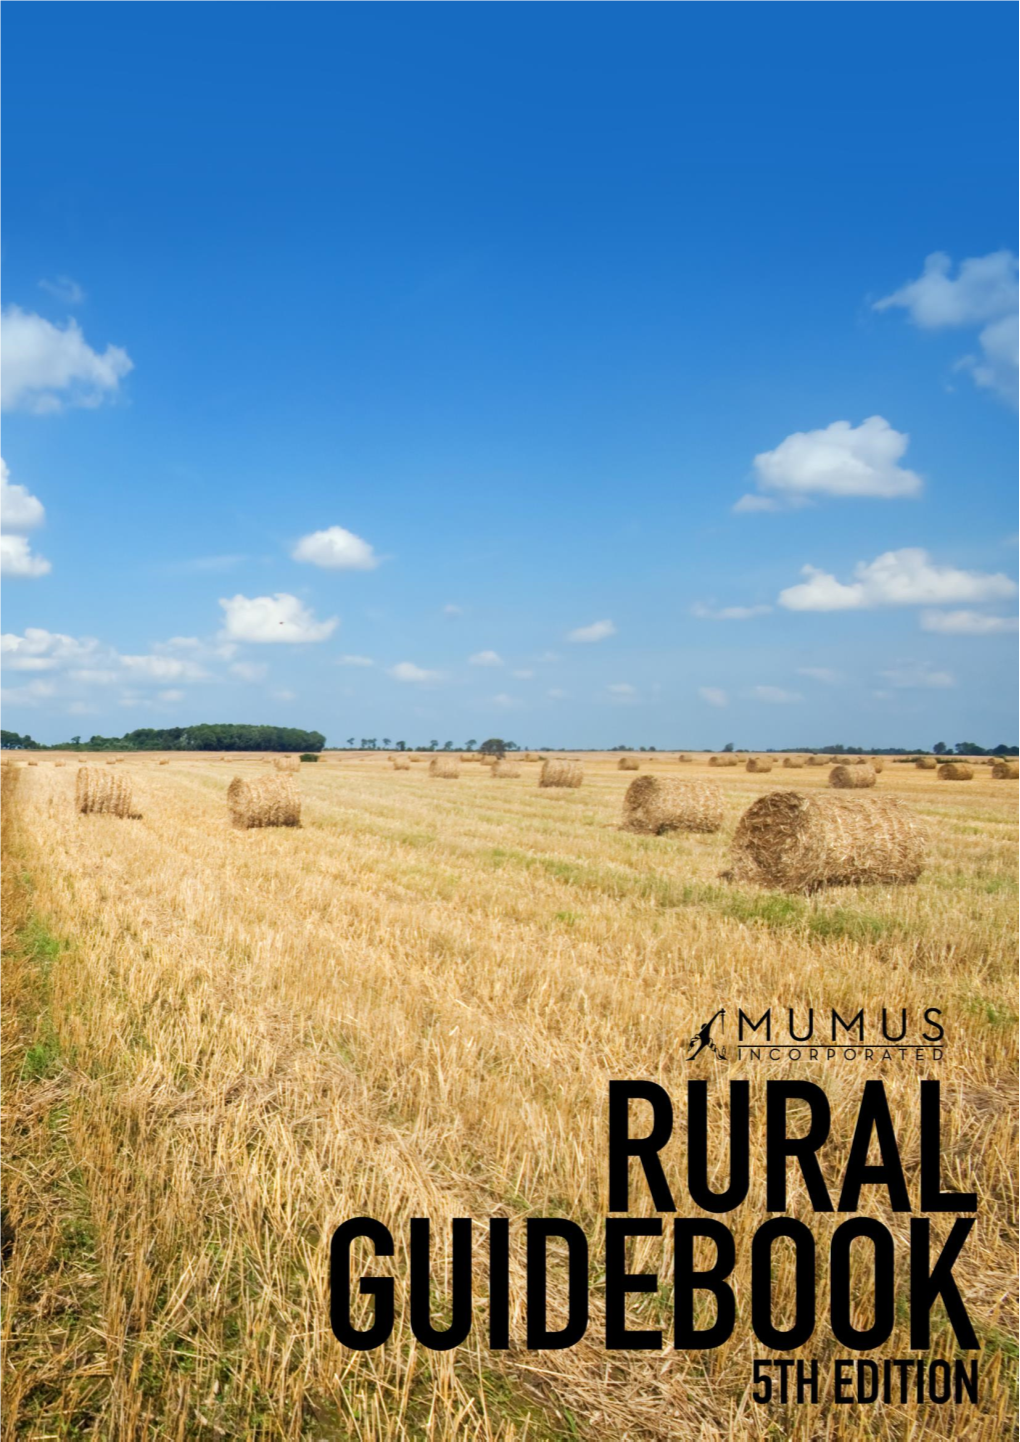 Mumus-Rural-Guidebook-2017.Pdf